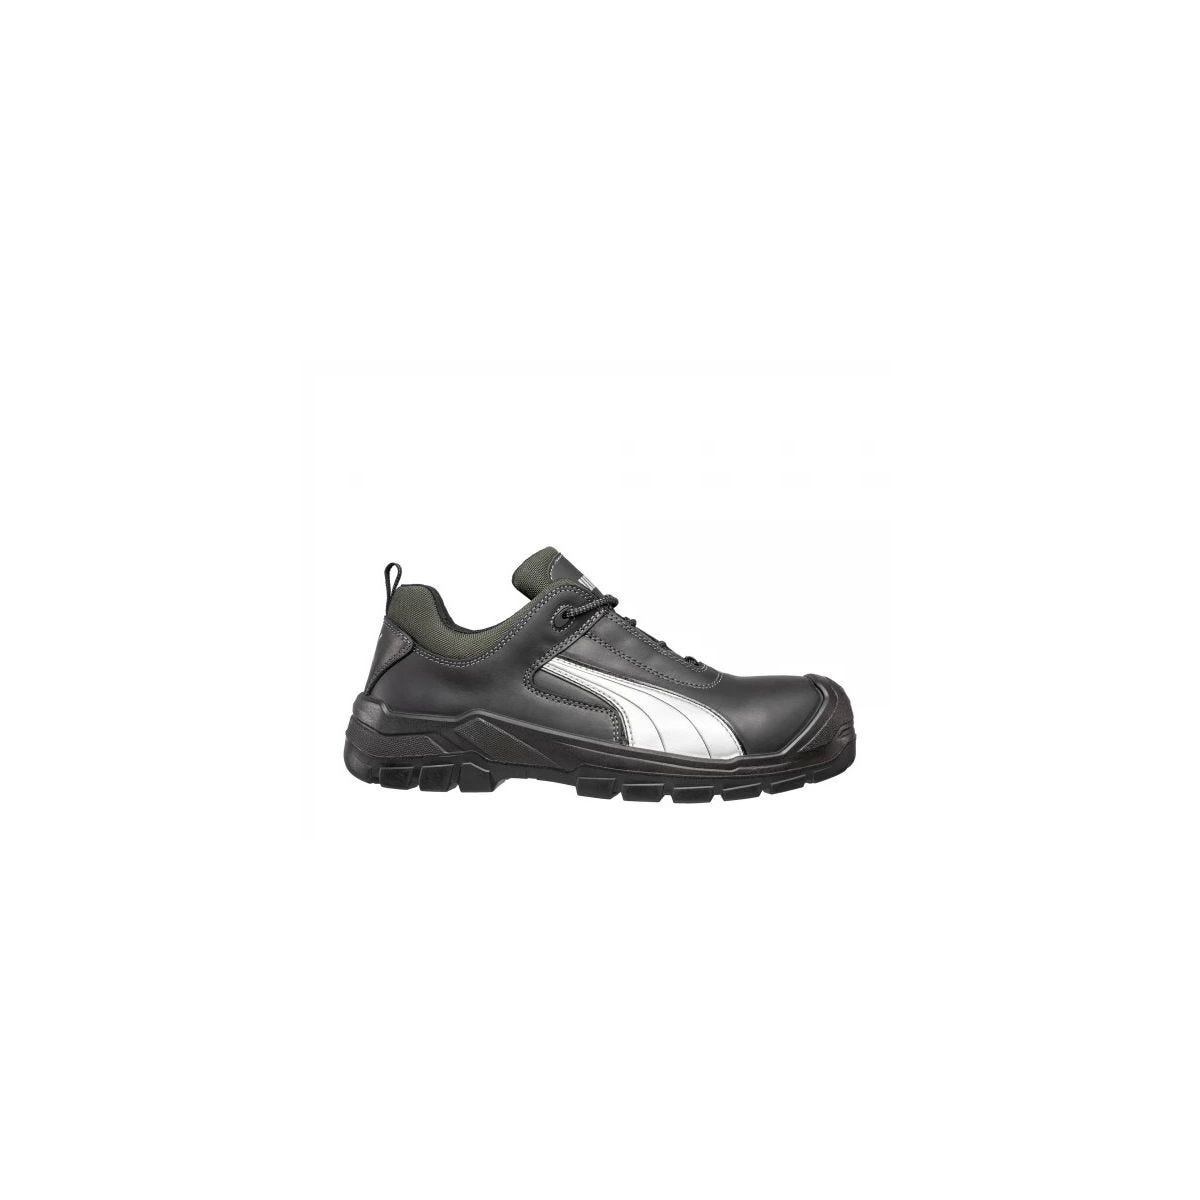 Chaussures de sécurité Cascades low S3 HRO SRC - Puma - Taille 40 0